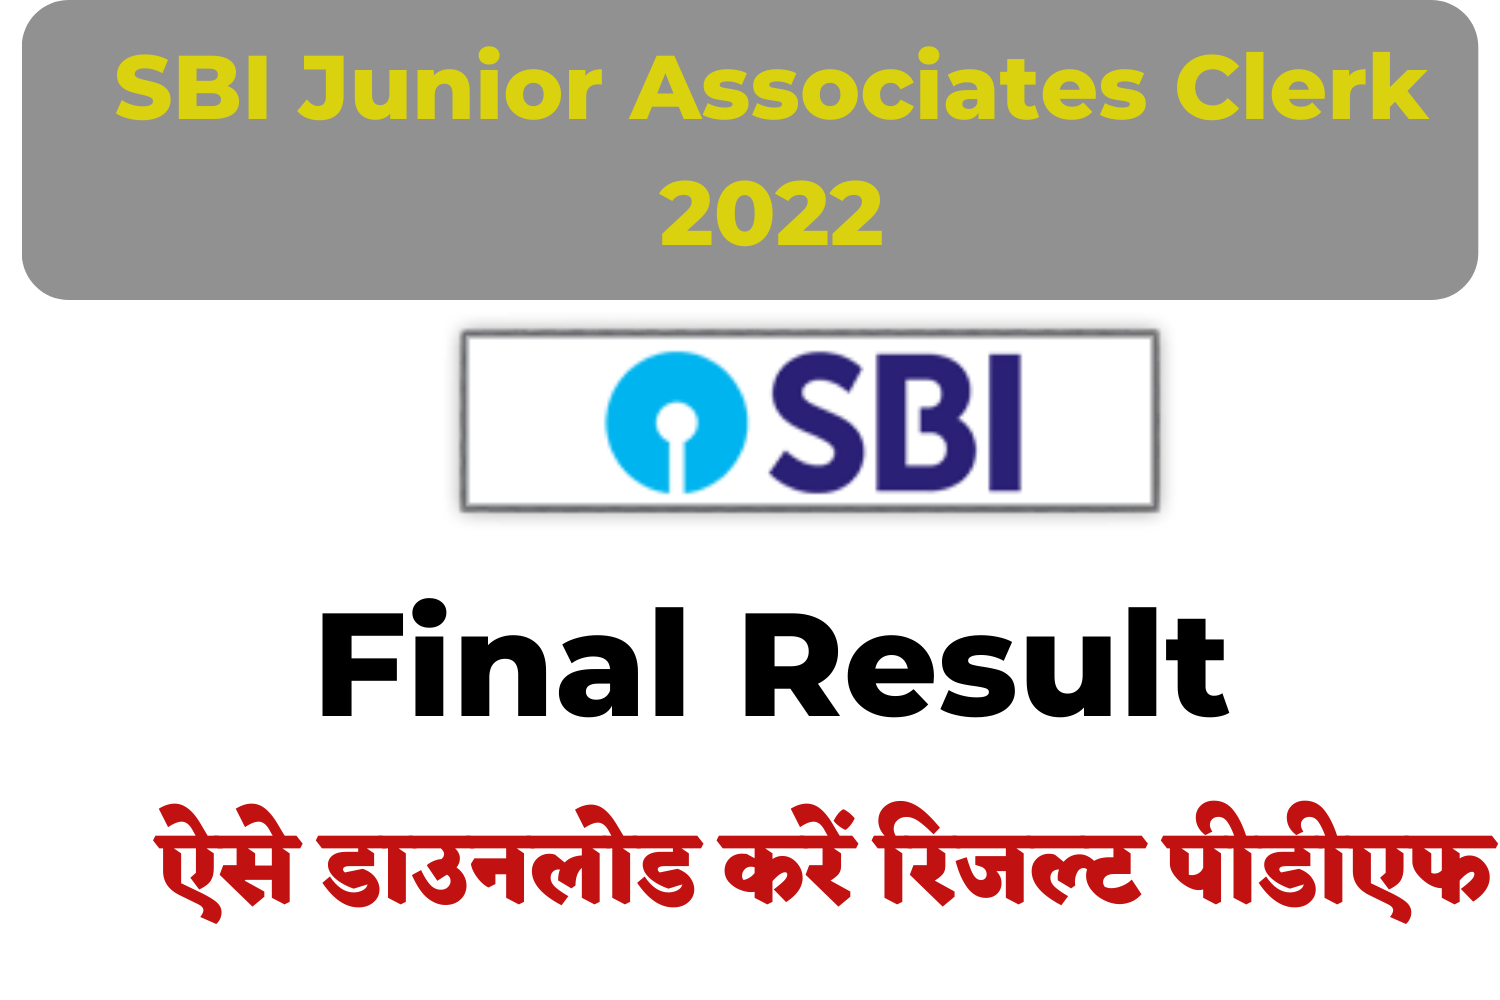 SBI Junior Associates Clerk 2022 Final Result